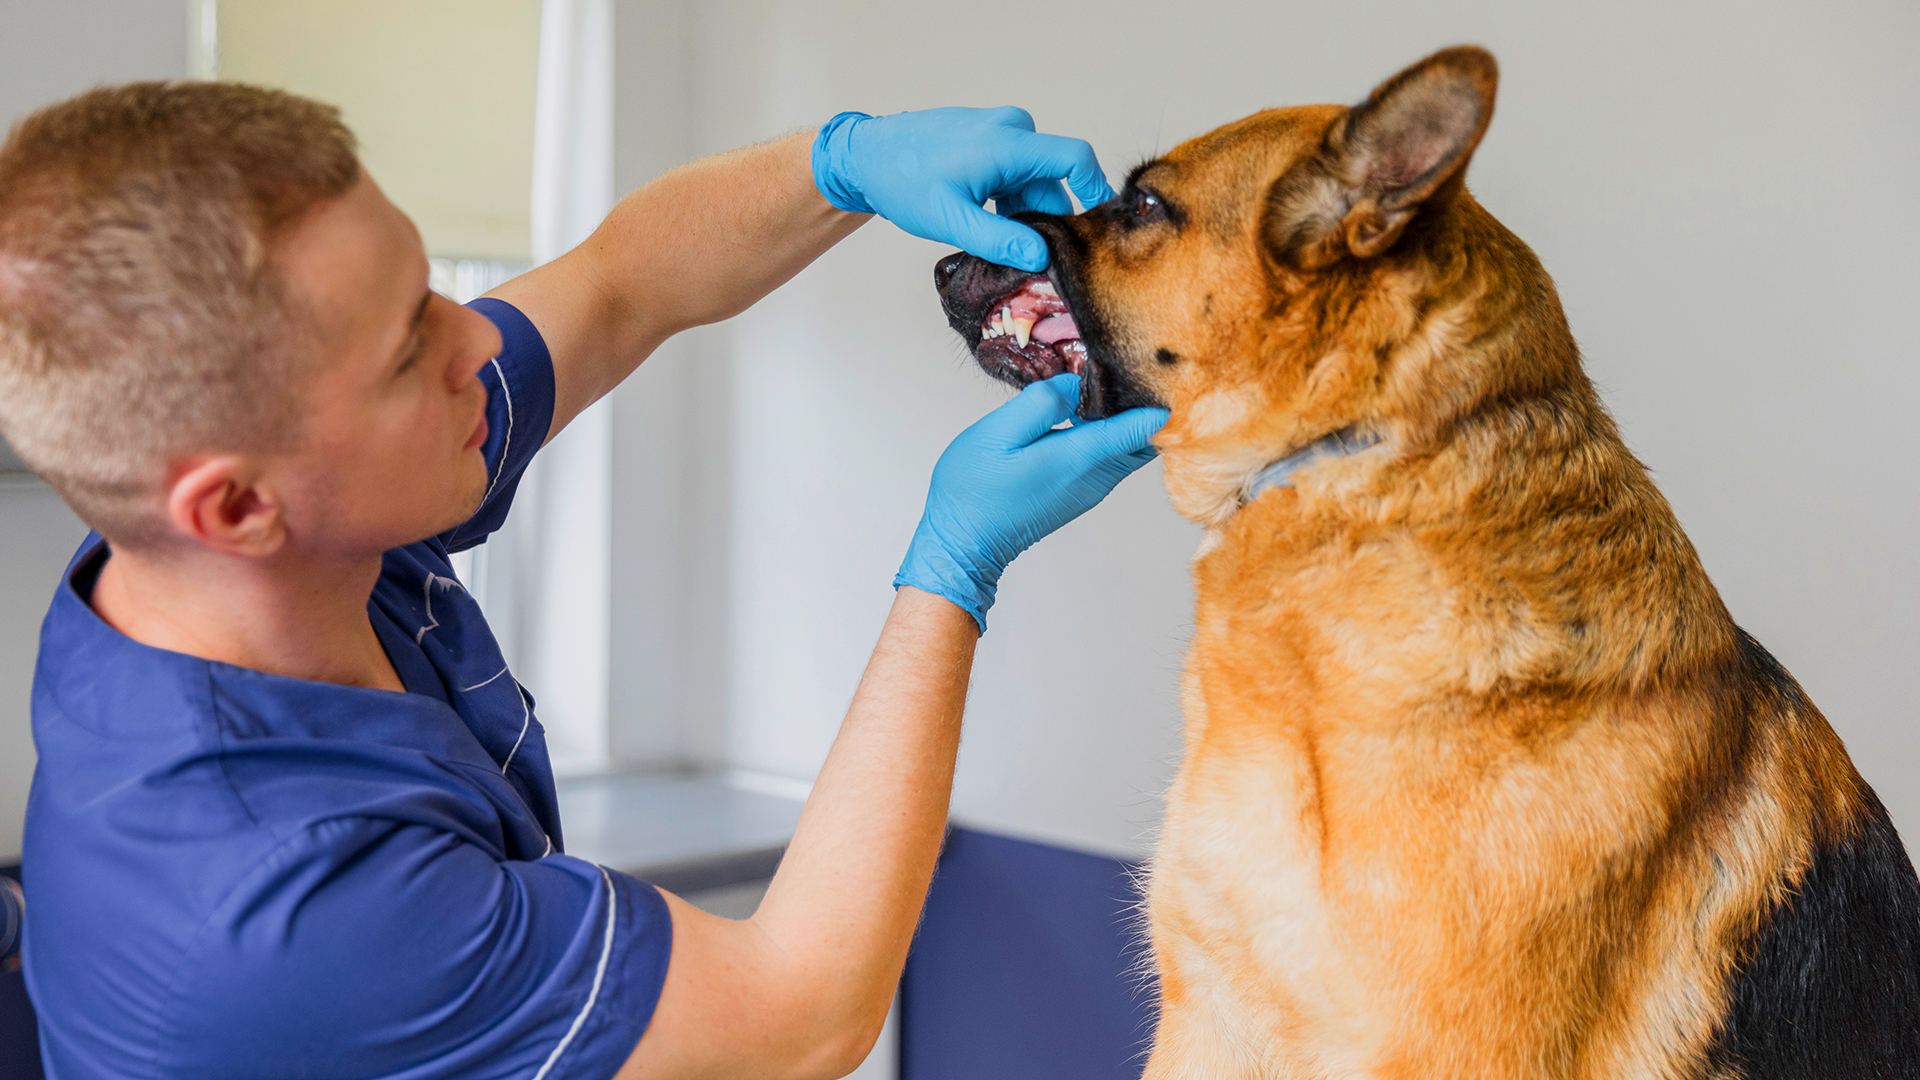 1 em cada 4 cães tem fraturas dentárias por mastigar produtos duros, aponta pesquisa; saiba como identificar problema